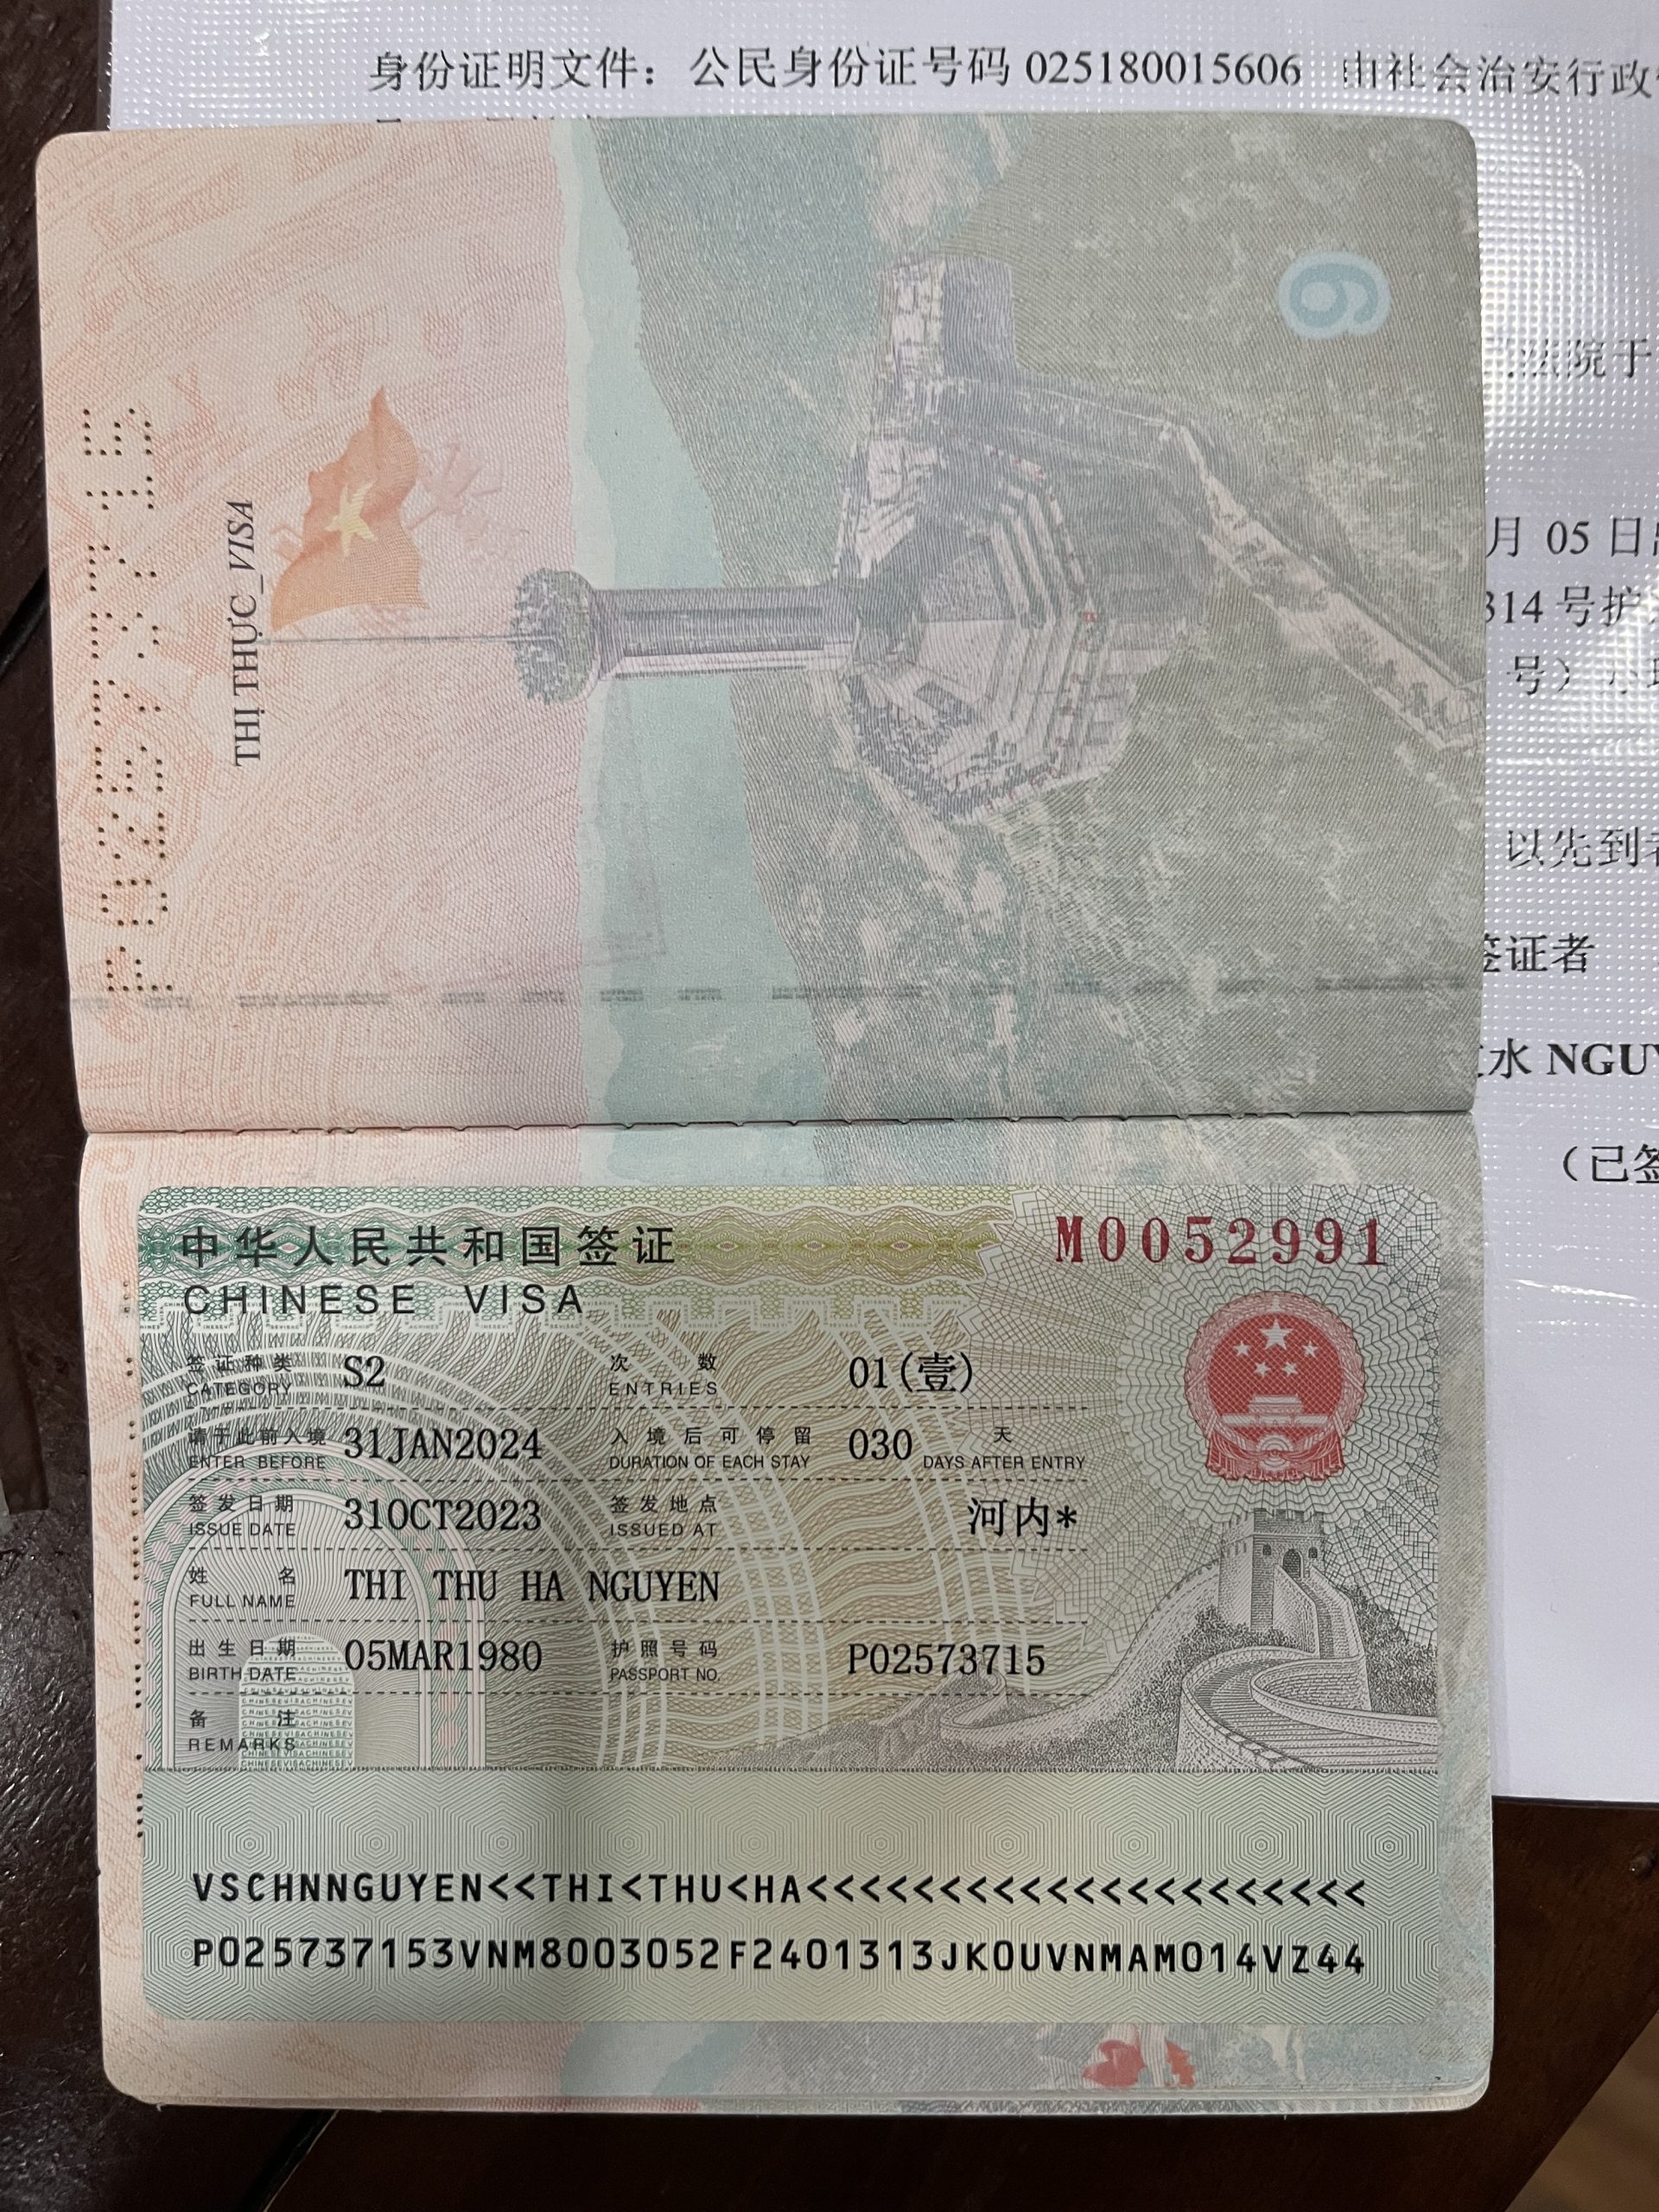 Visa kết hôn S2 | Thủ tục đăng ký kết hôn với người Trung Quốc